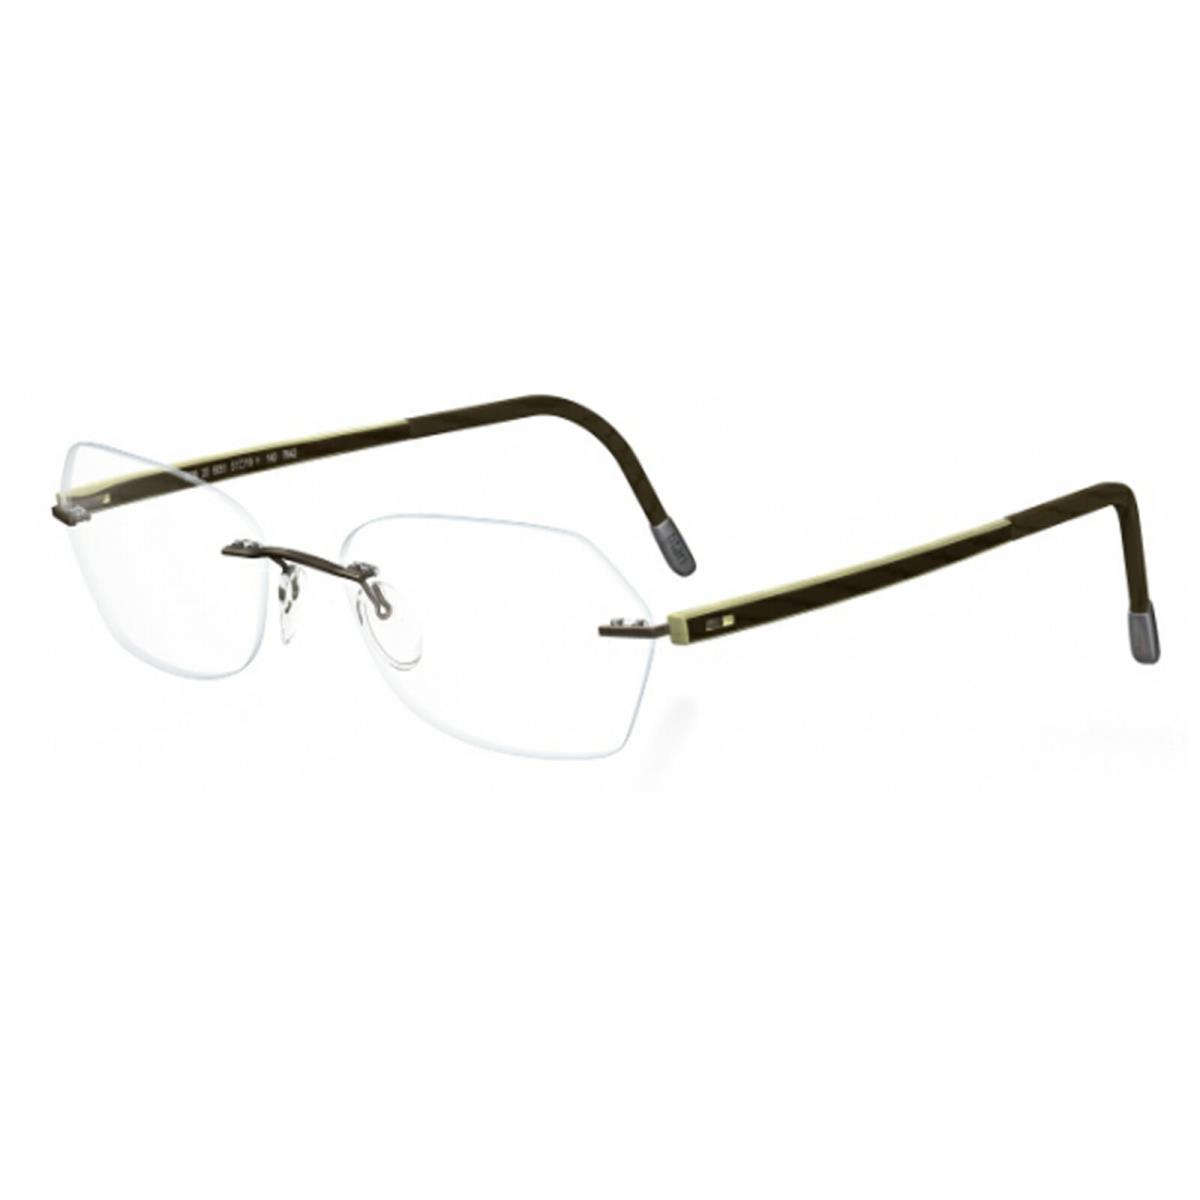 Silhouette Eyeglasses Zenlight Inspiration 6691-6054